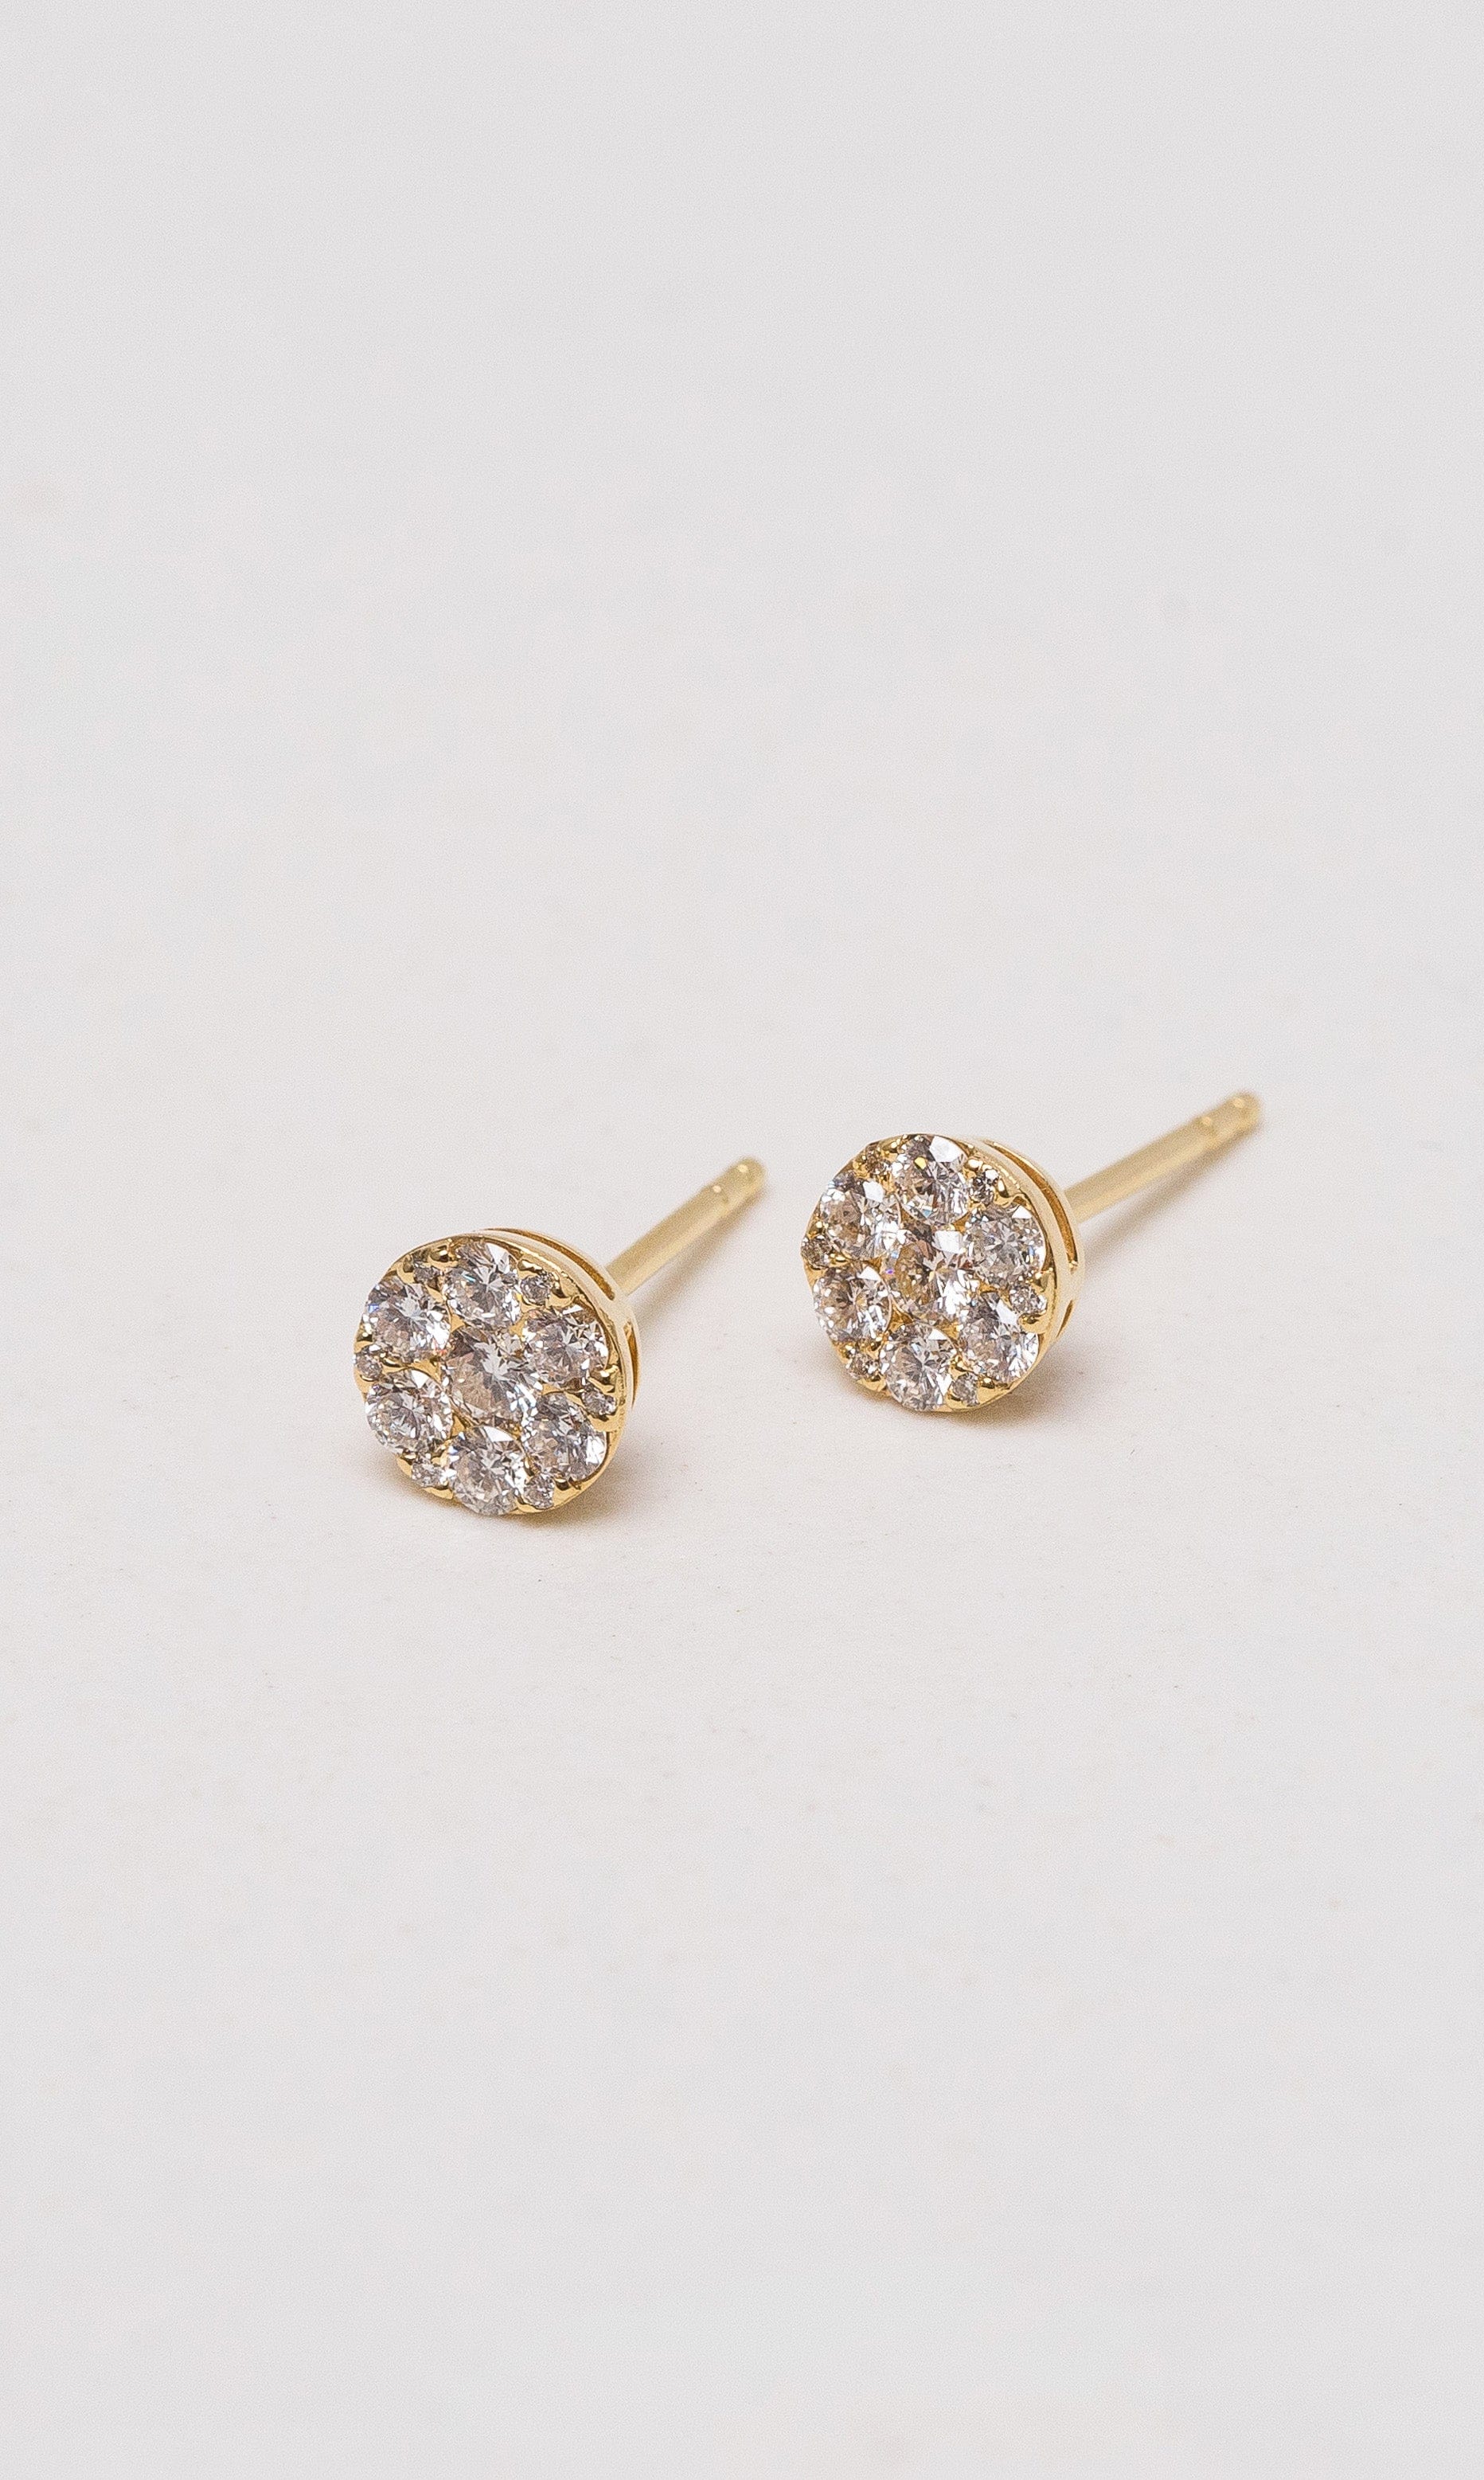 Hogans Family Jewellers 18K YG Diamond Cluster Stud Earrings